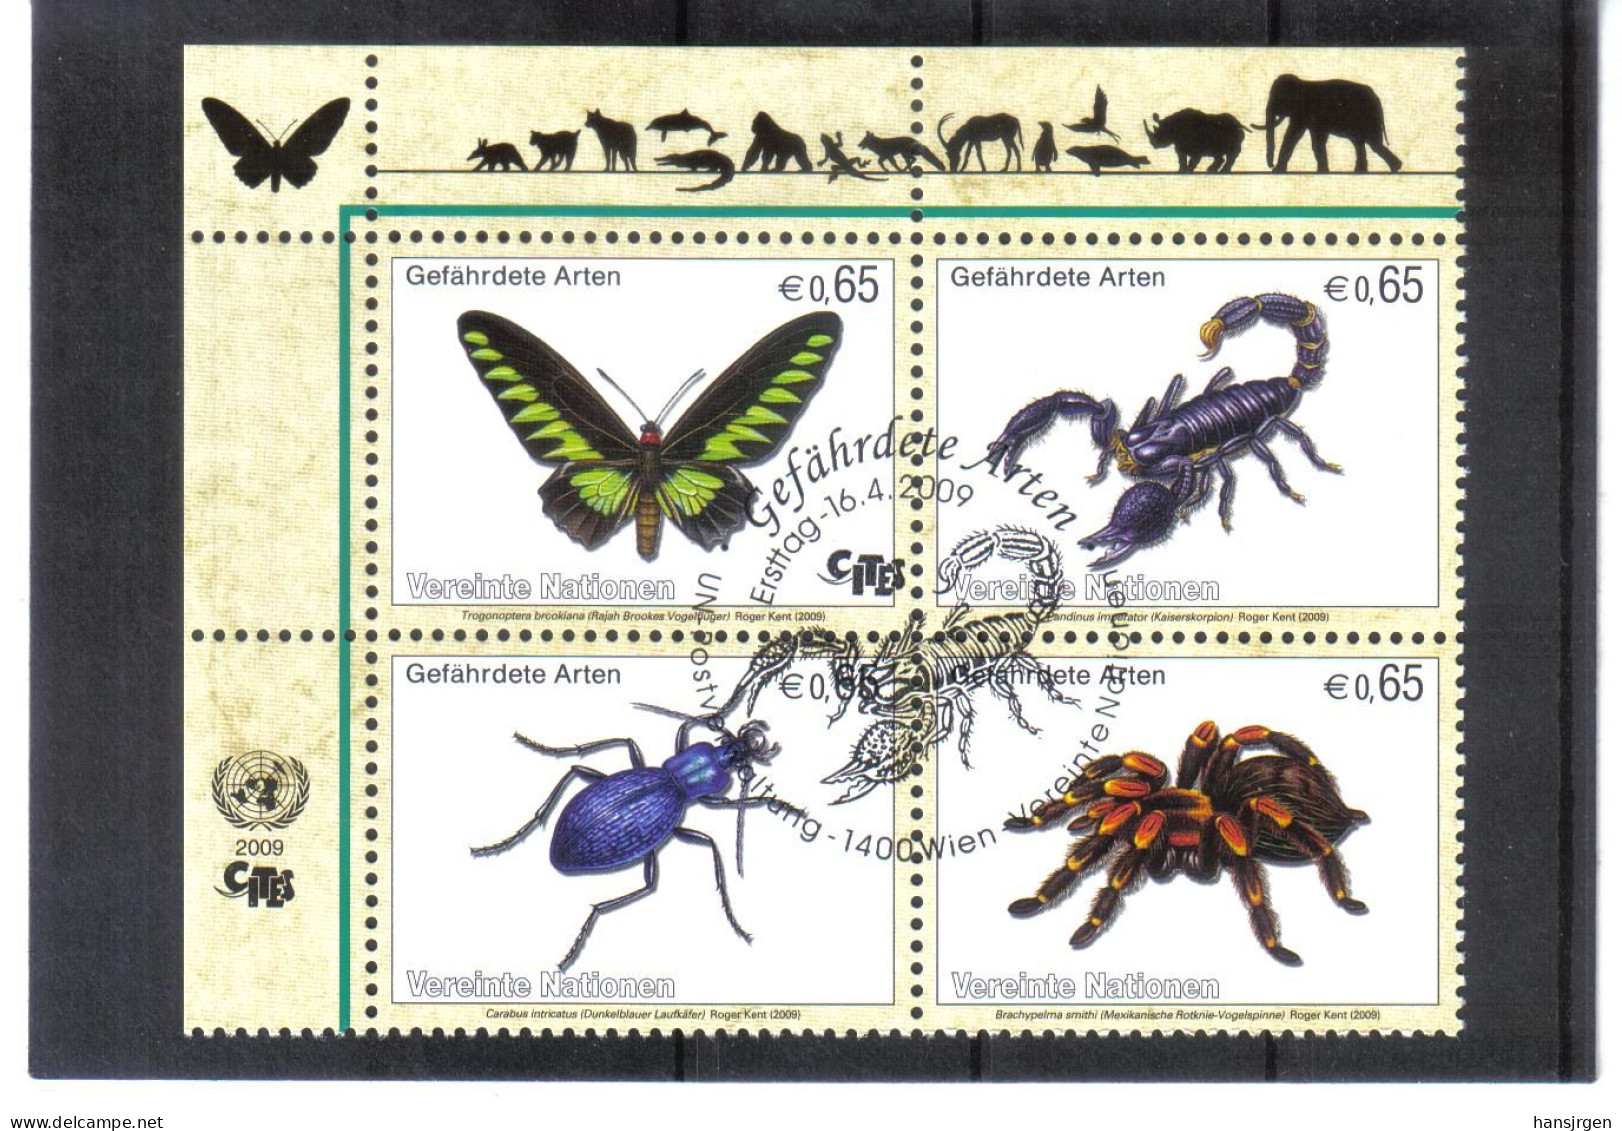 VV837 UNO WIEN 2009 MICHL 588/91 Gefährderte Arten INSEKTEN Viererblock Gestempelt SIEHE ABBILDUNG - Used Stamps